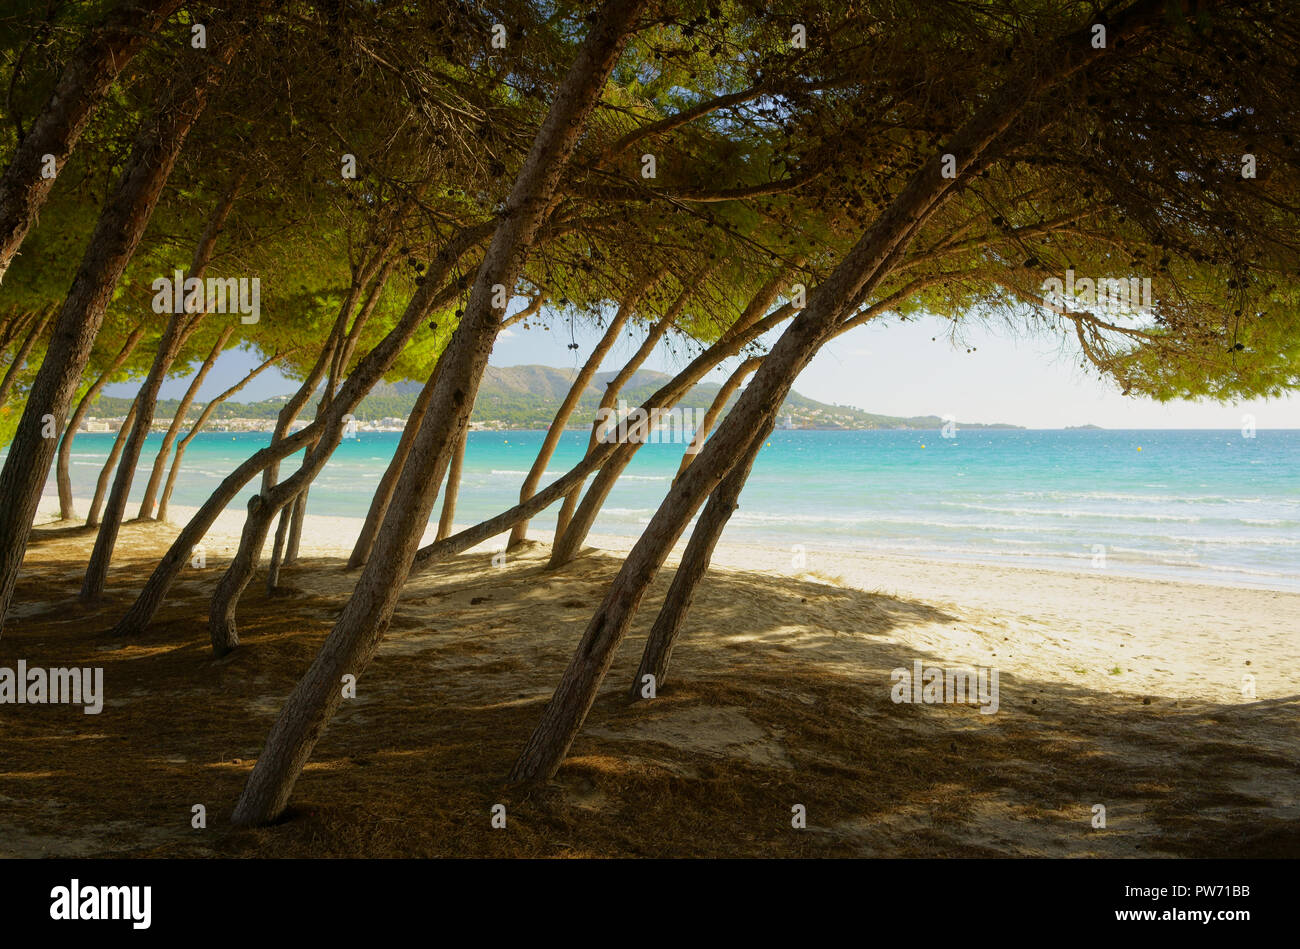 Les pins et les eaux turquoise de la mer Méditerranée à la plage à Majorque. Playa de Muro, la plage d'Alcudia, près de Port d'Alcudia, Mallorca, Espagne. Banque D'Images